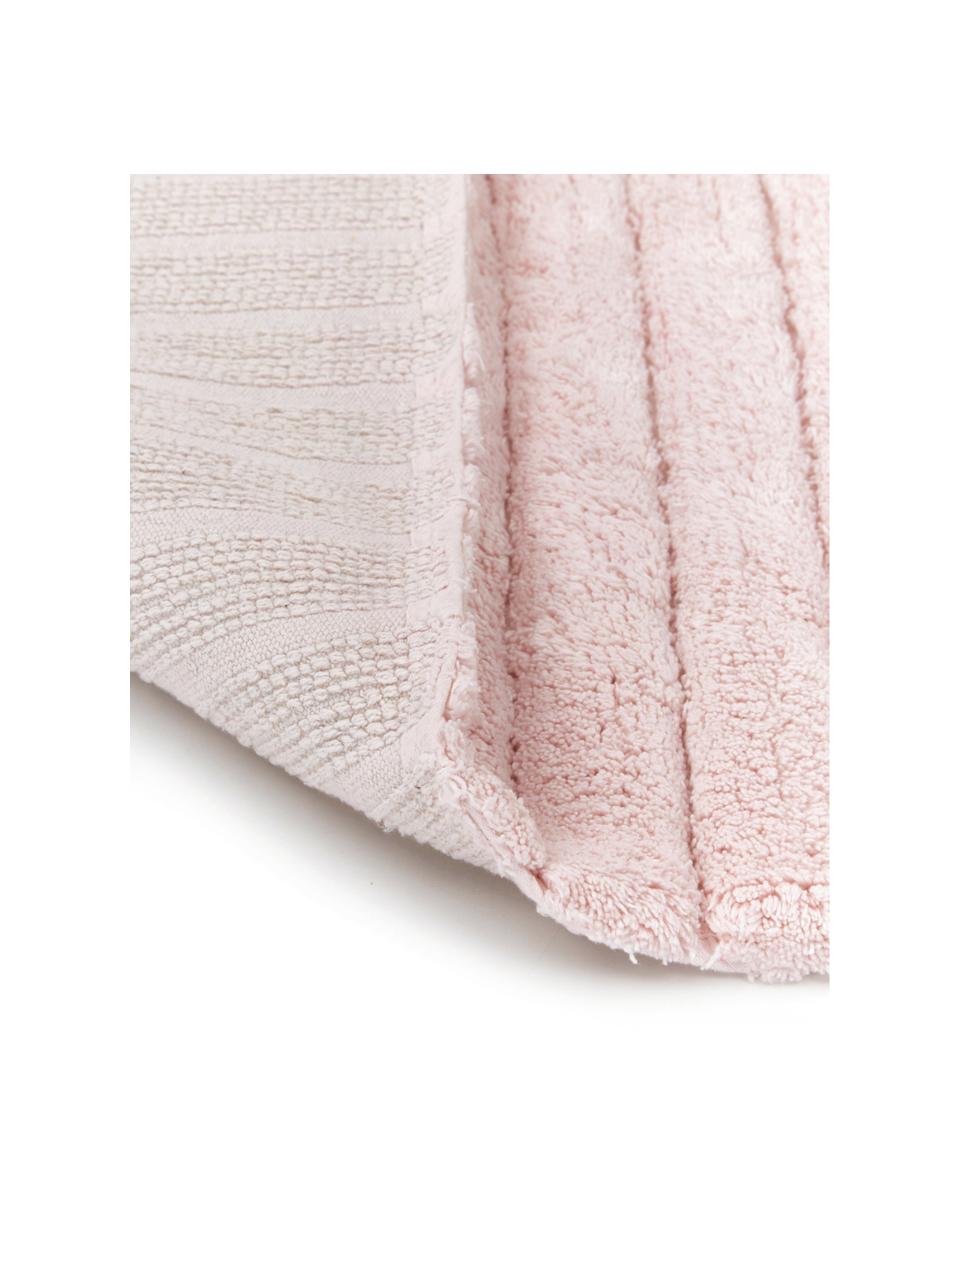 Tappeto bagno morbido rosa Board, 100% cotone, qualità pesante, 1900 g/m², Rosa, Larg. 60 x Lung. 90 cm